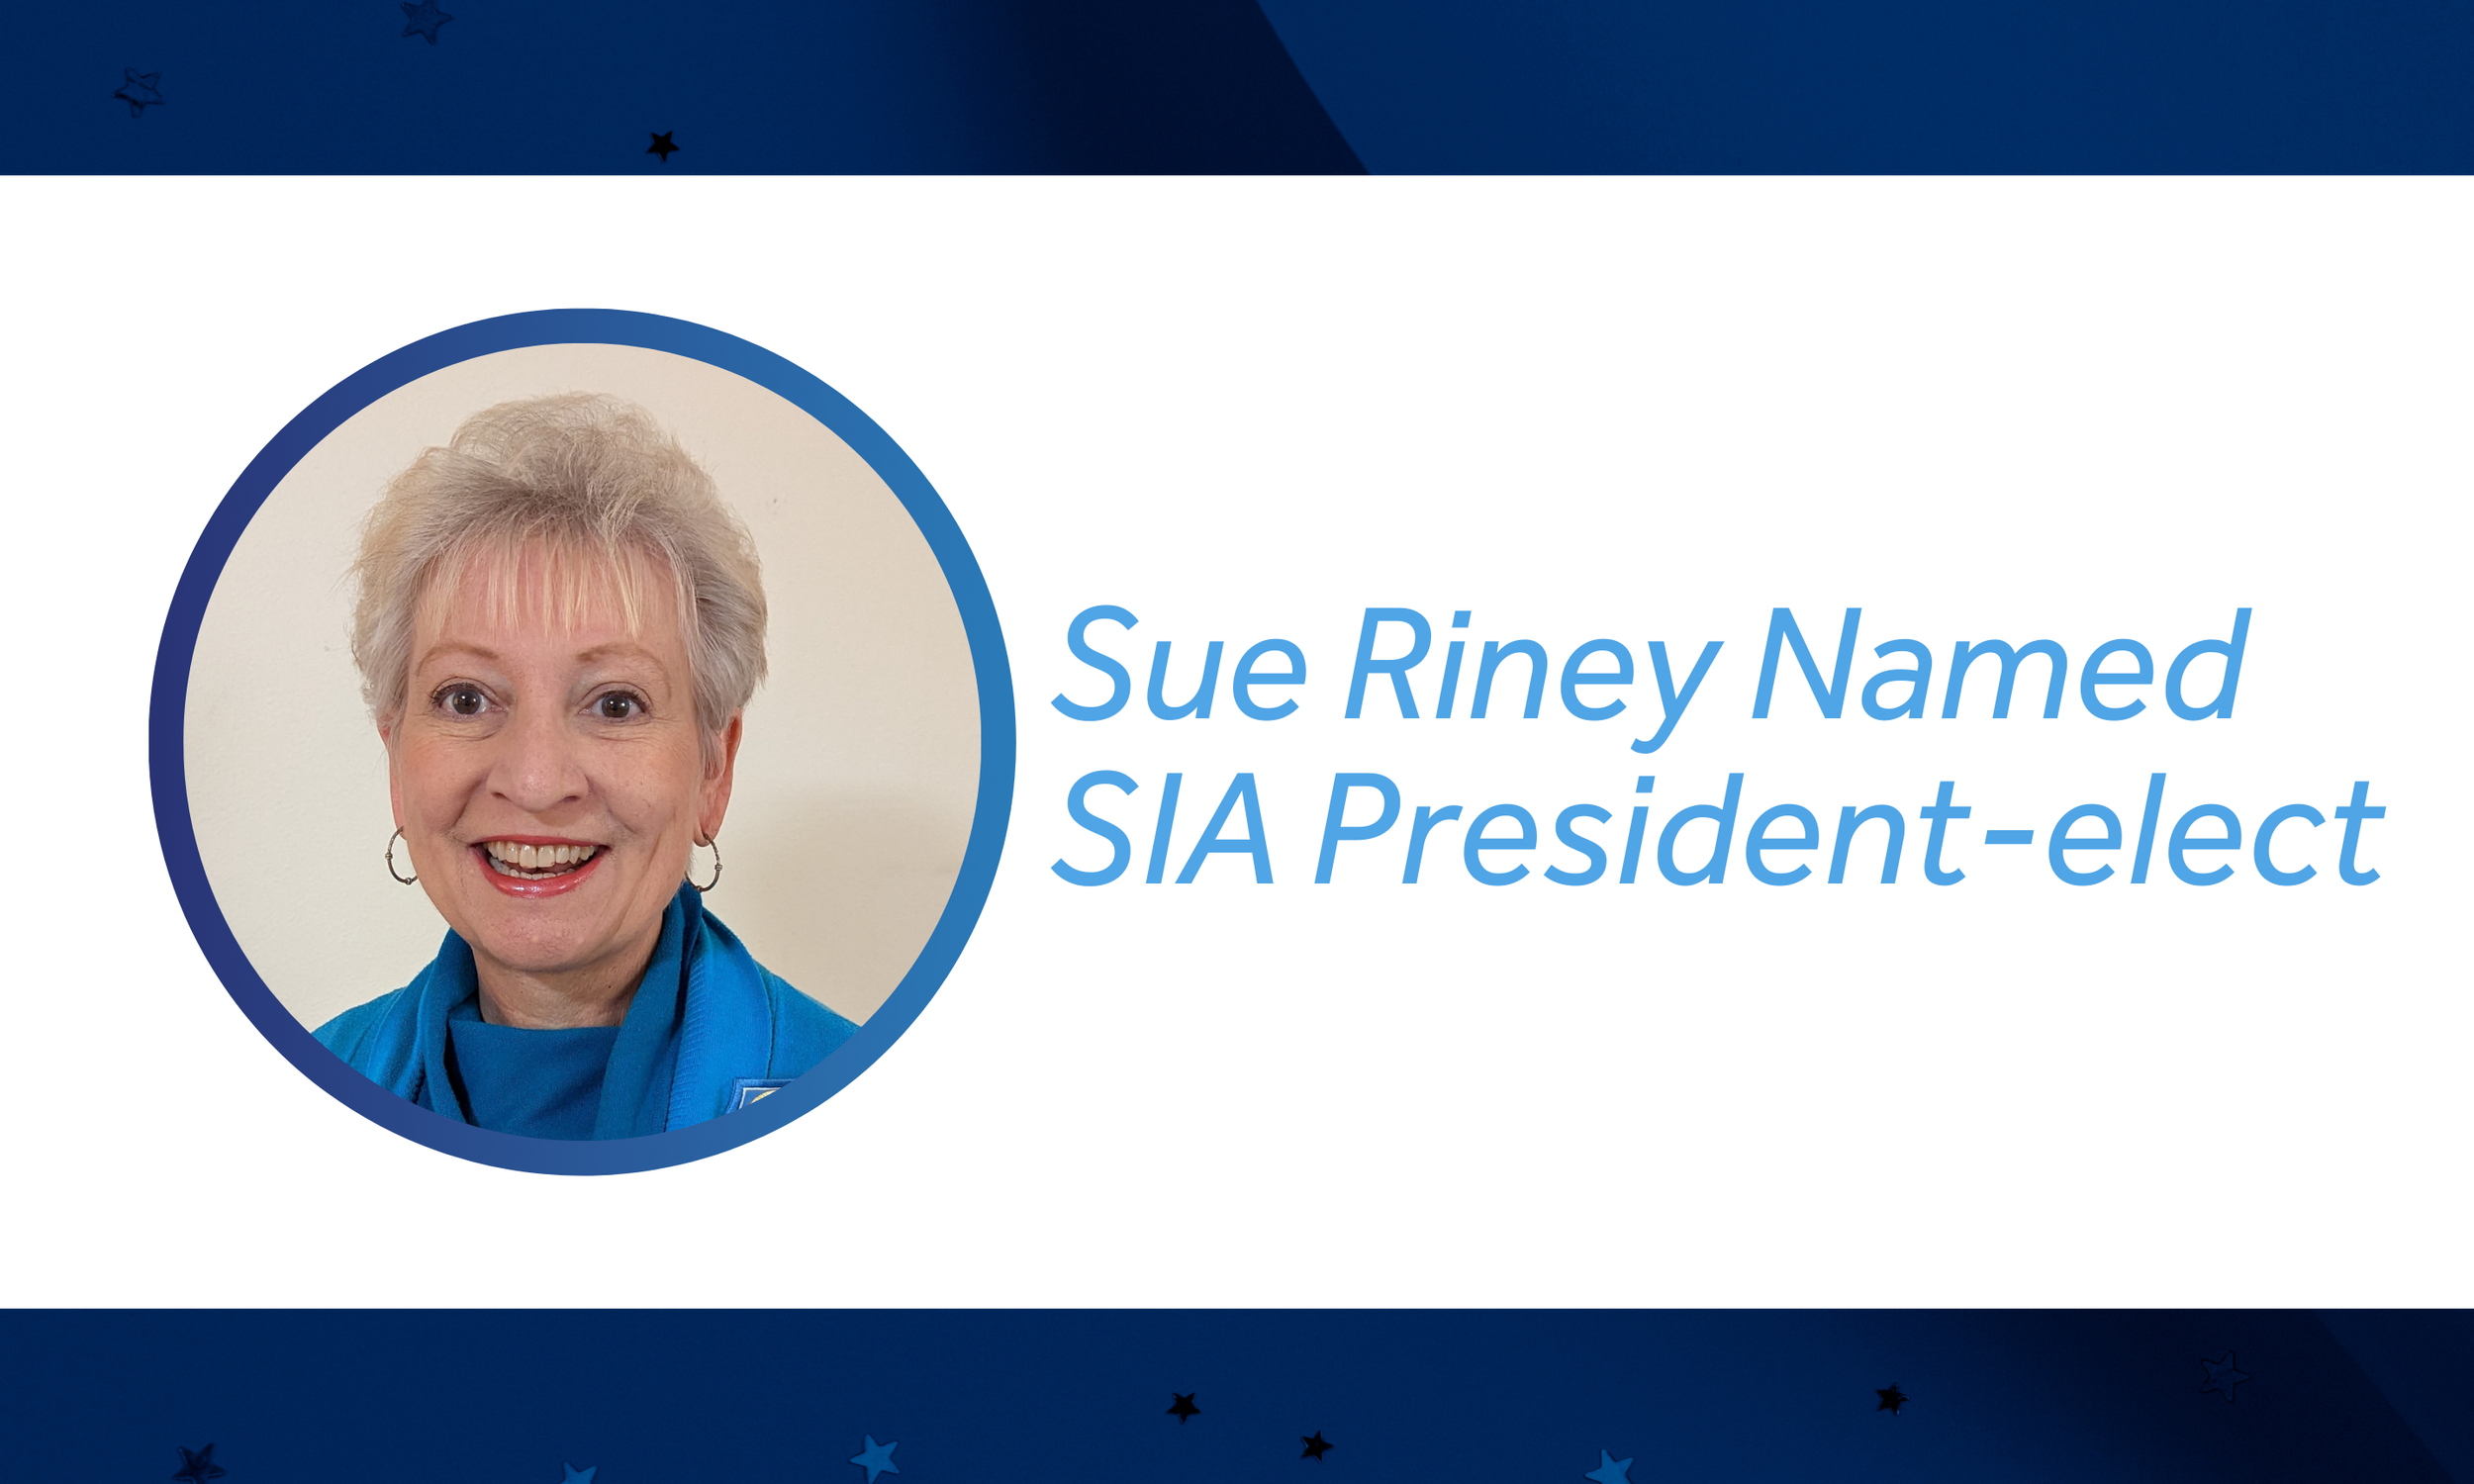 スー・リニーがSIA 次期会長に就任